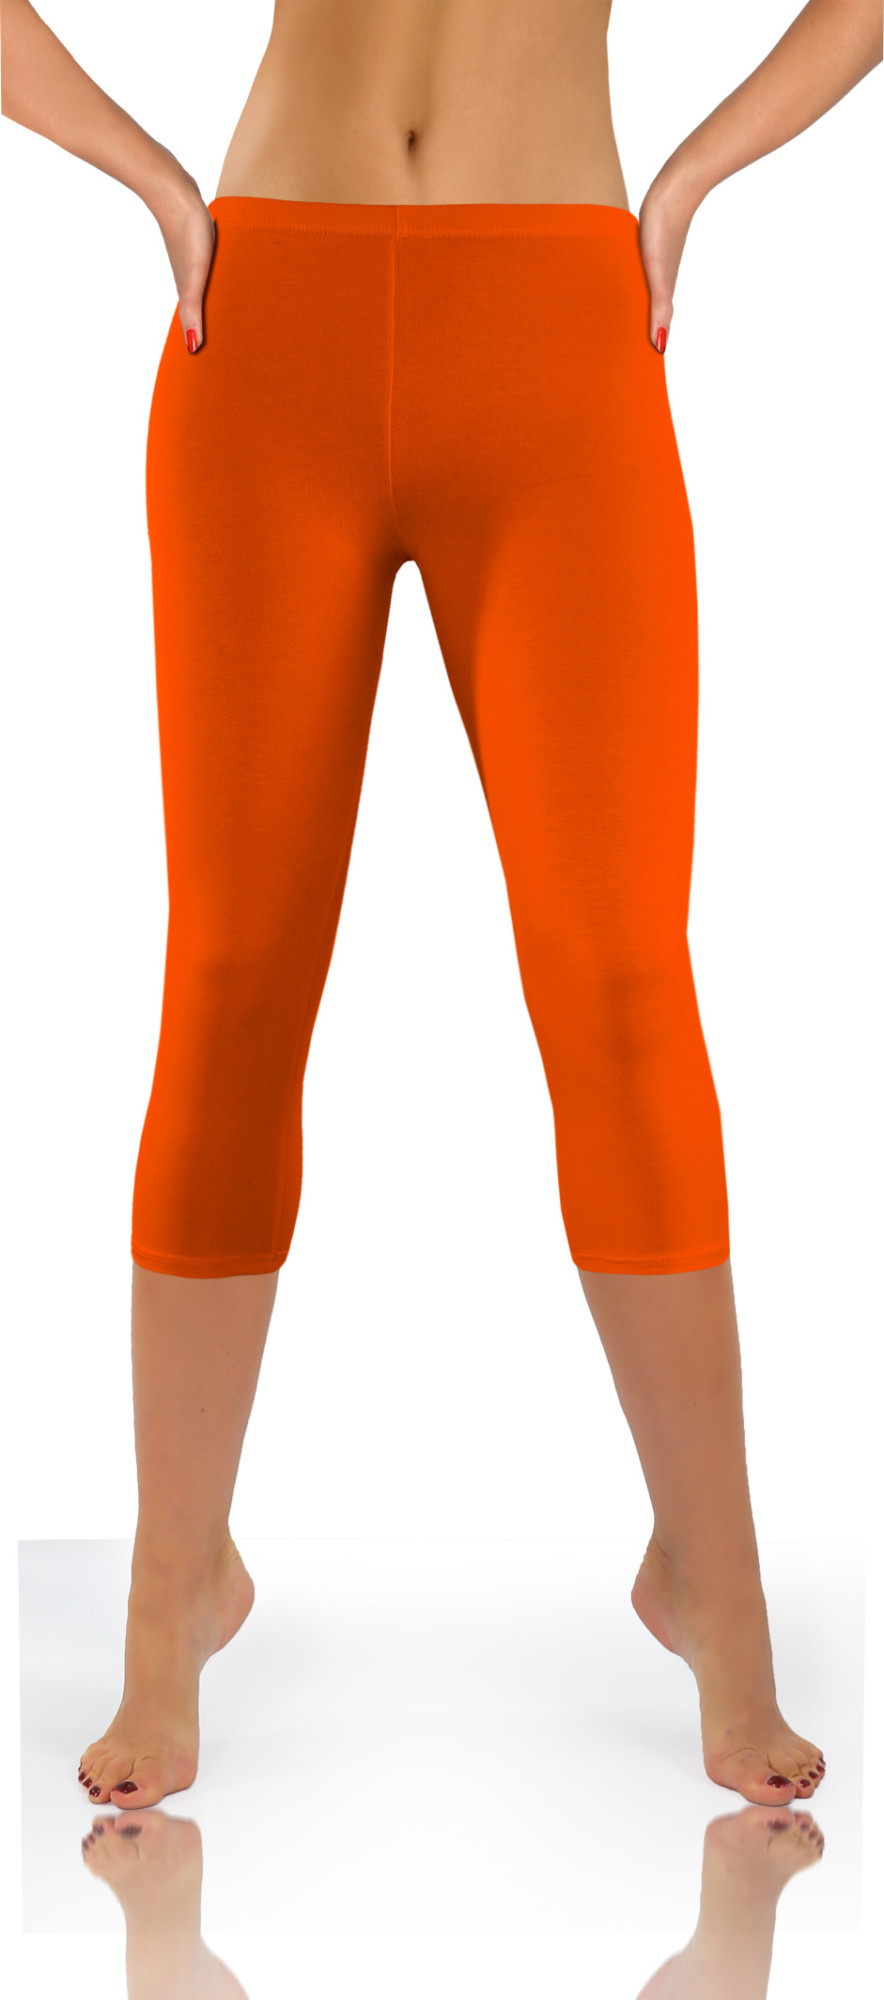 Sesto Senso Medium Leggins LEG_01 Orange XL